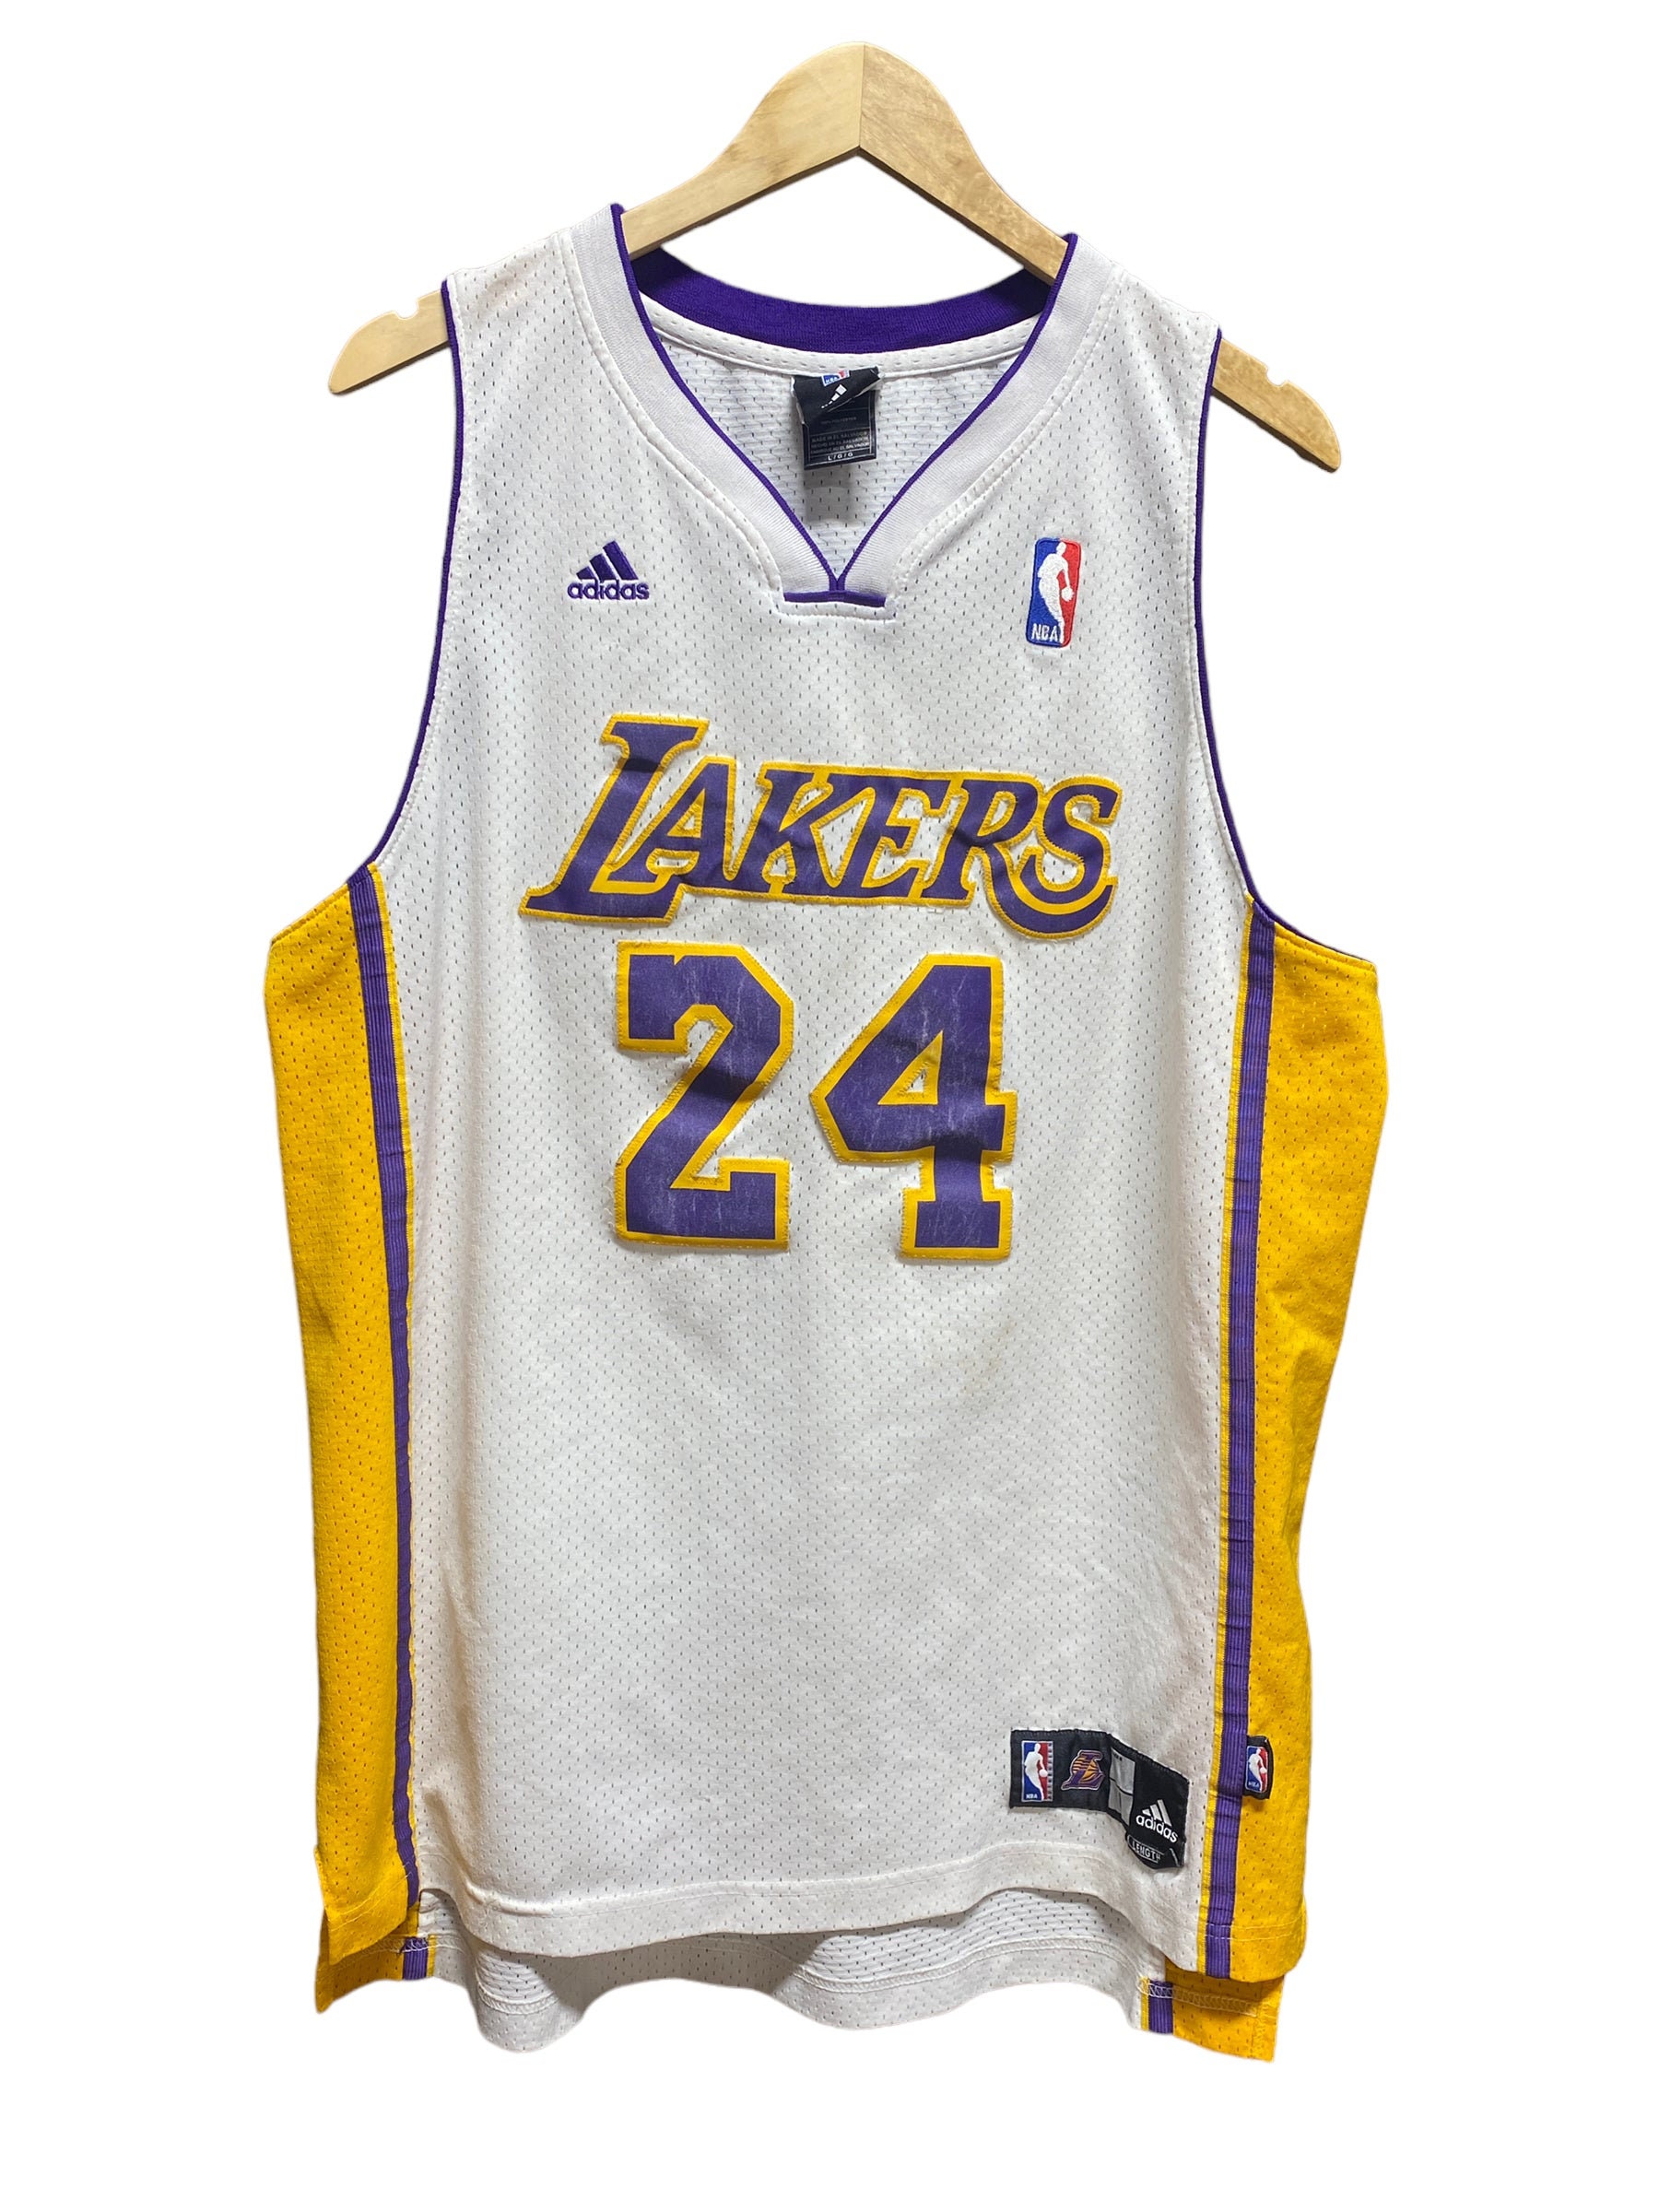 Adidas Stitched Kobe Bryant 24 Lakers Jersey Size Large 